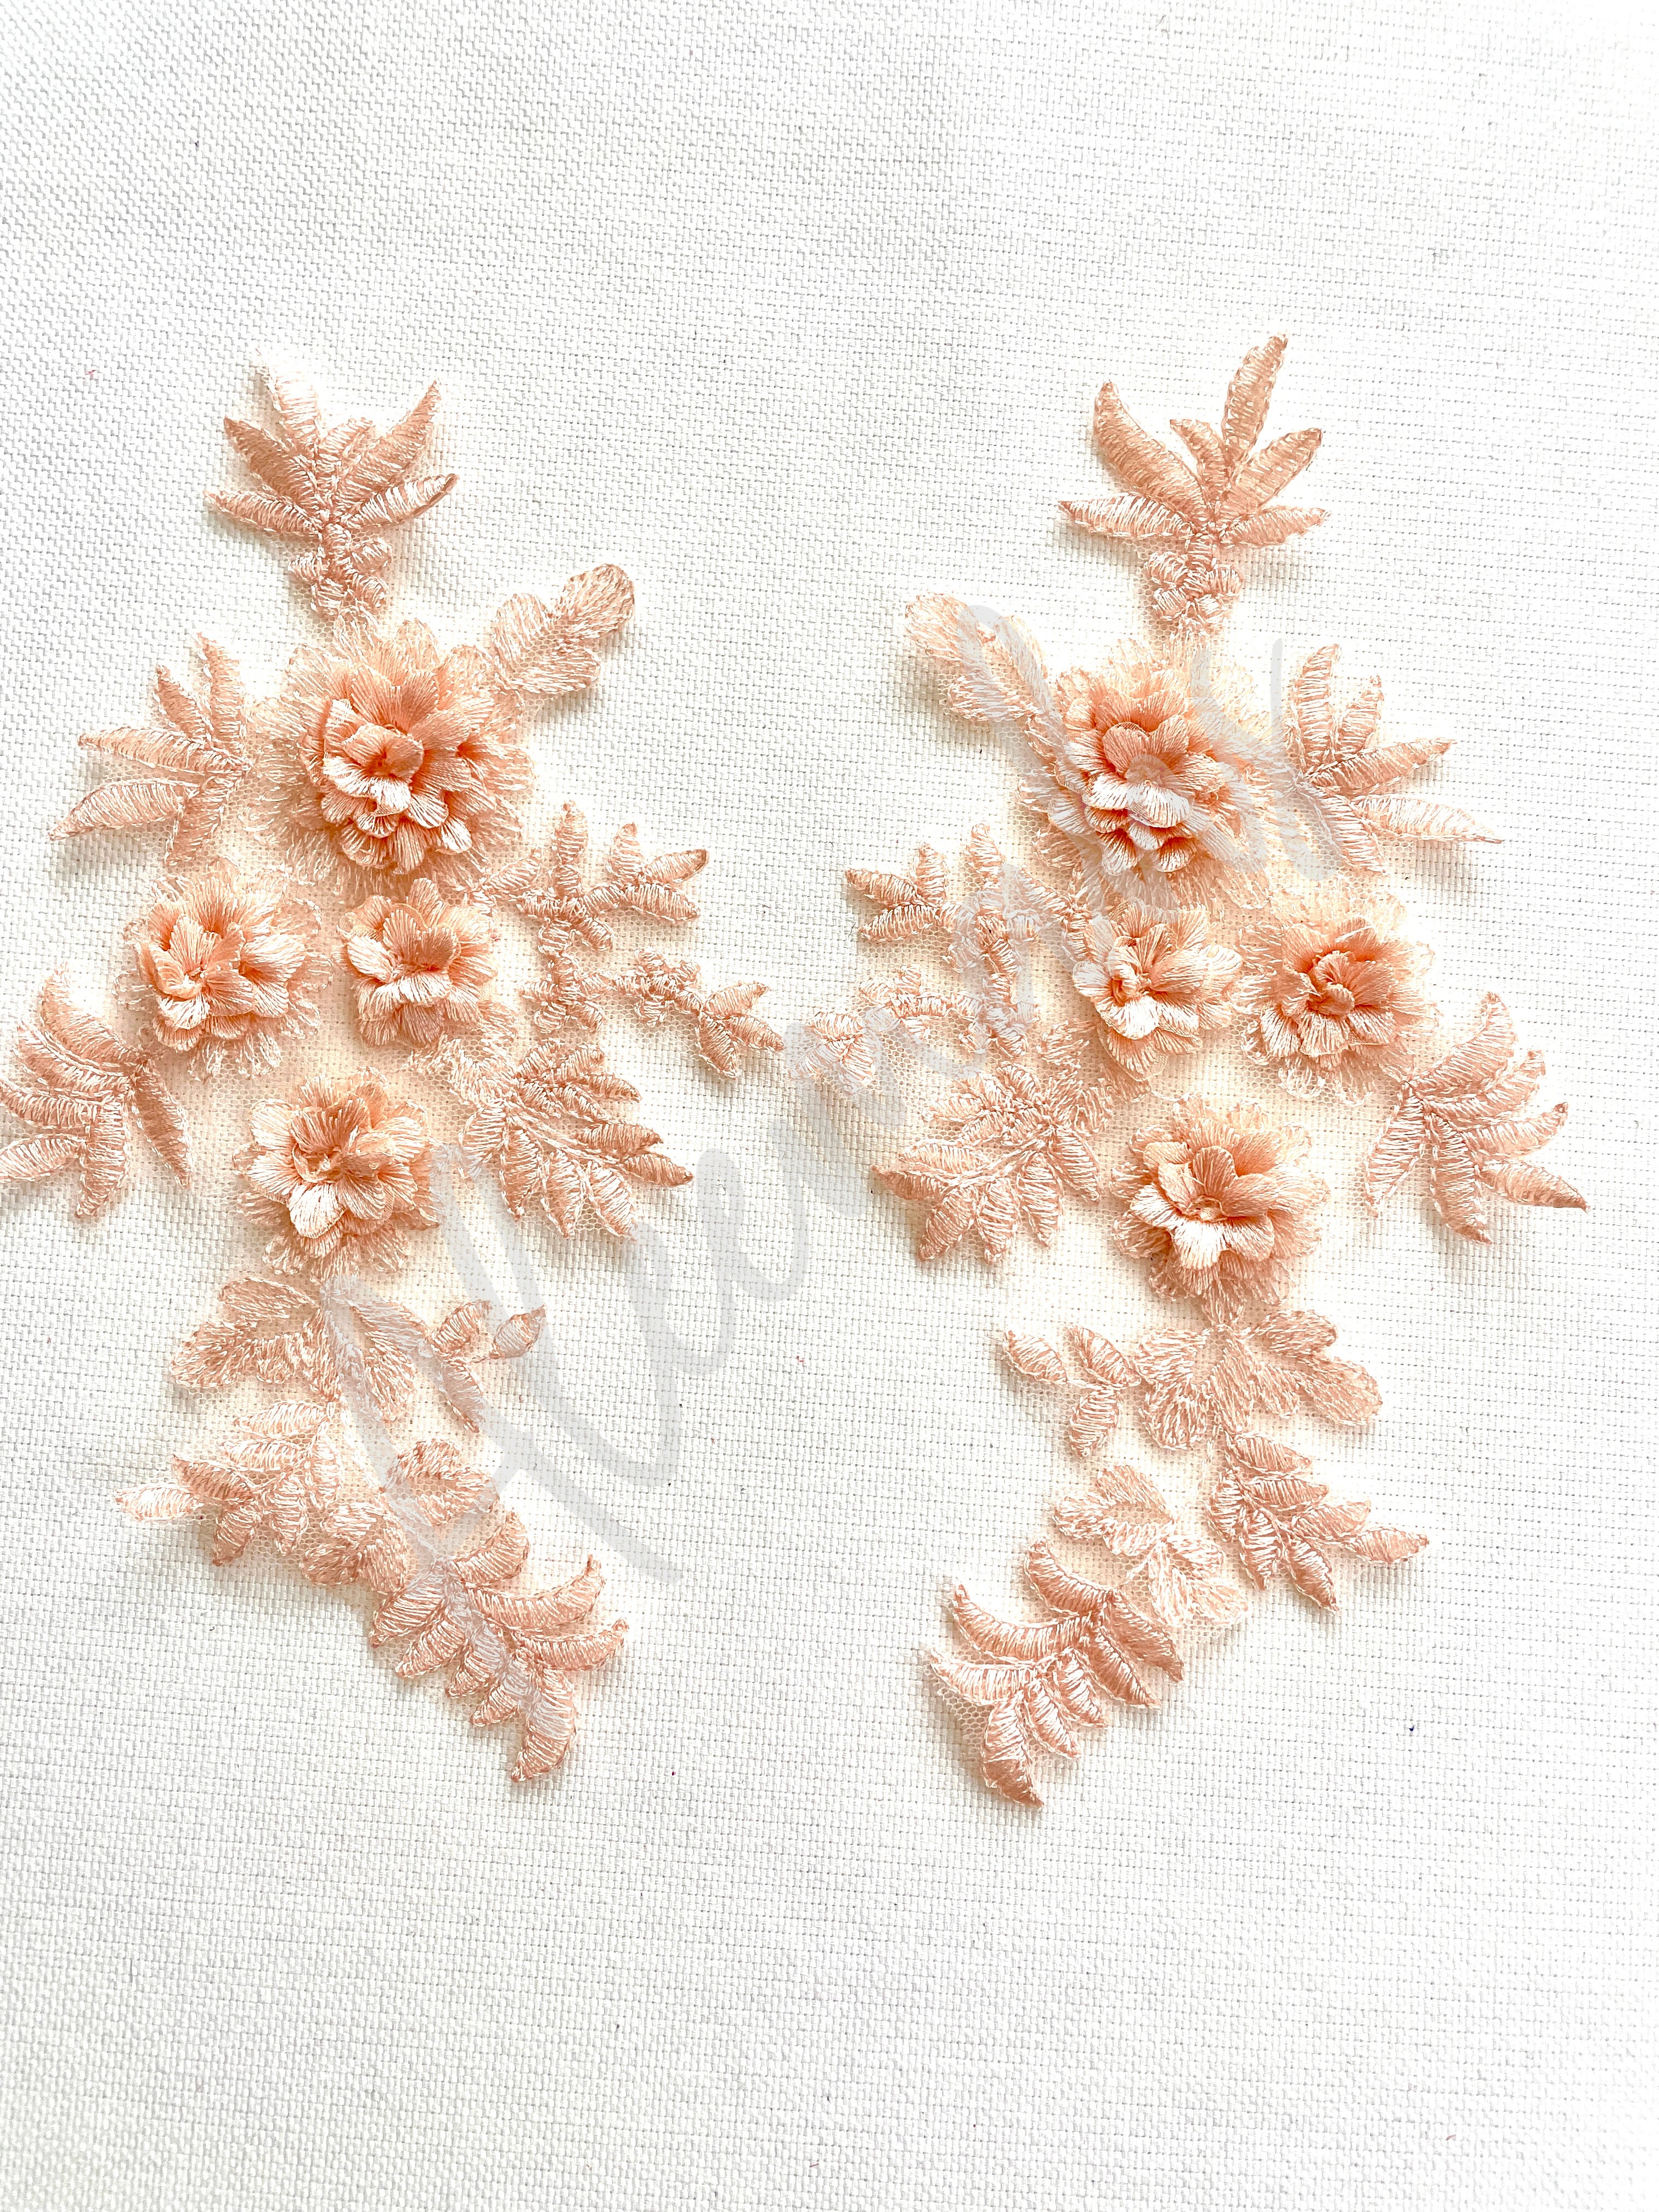 LA-033: 3D floral lace applique pair: Antique Pink/Apricot